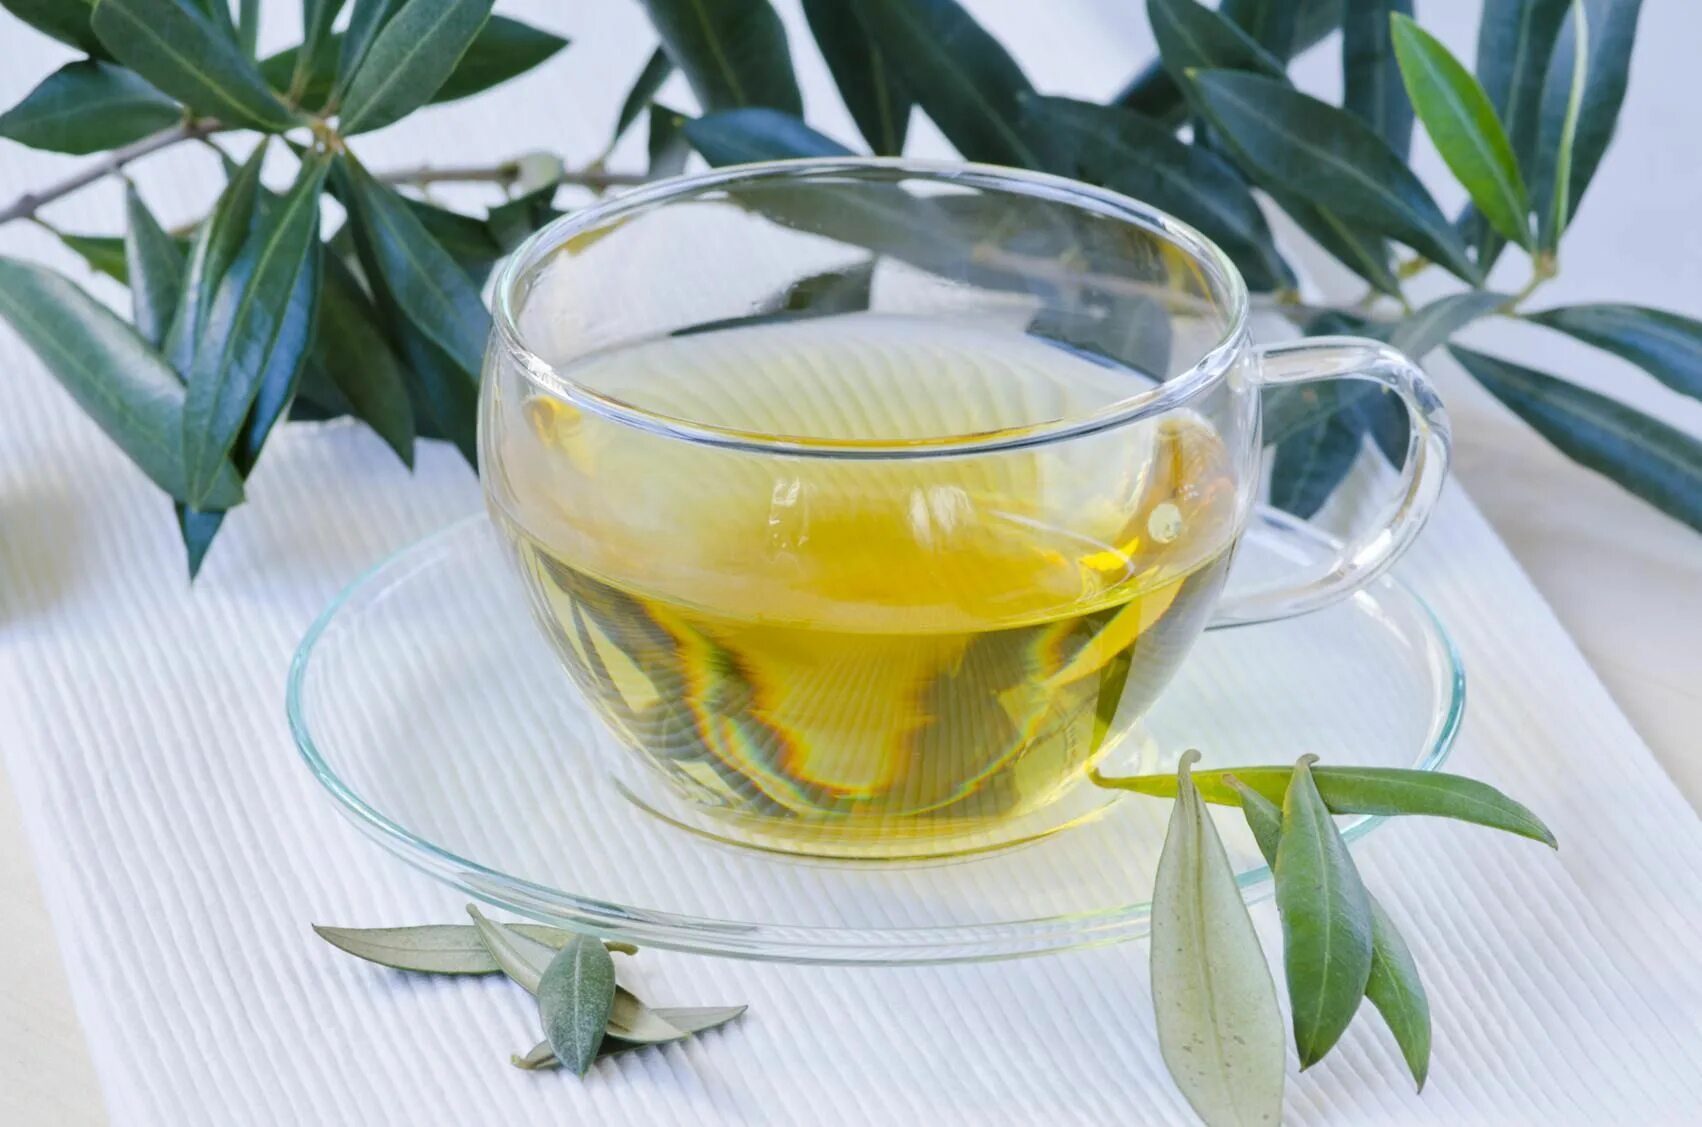 Olive Leaf Tea. Zeytin Yapraği чай. Зеленый чай. Оливковый чай.